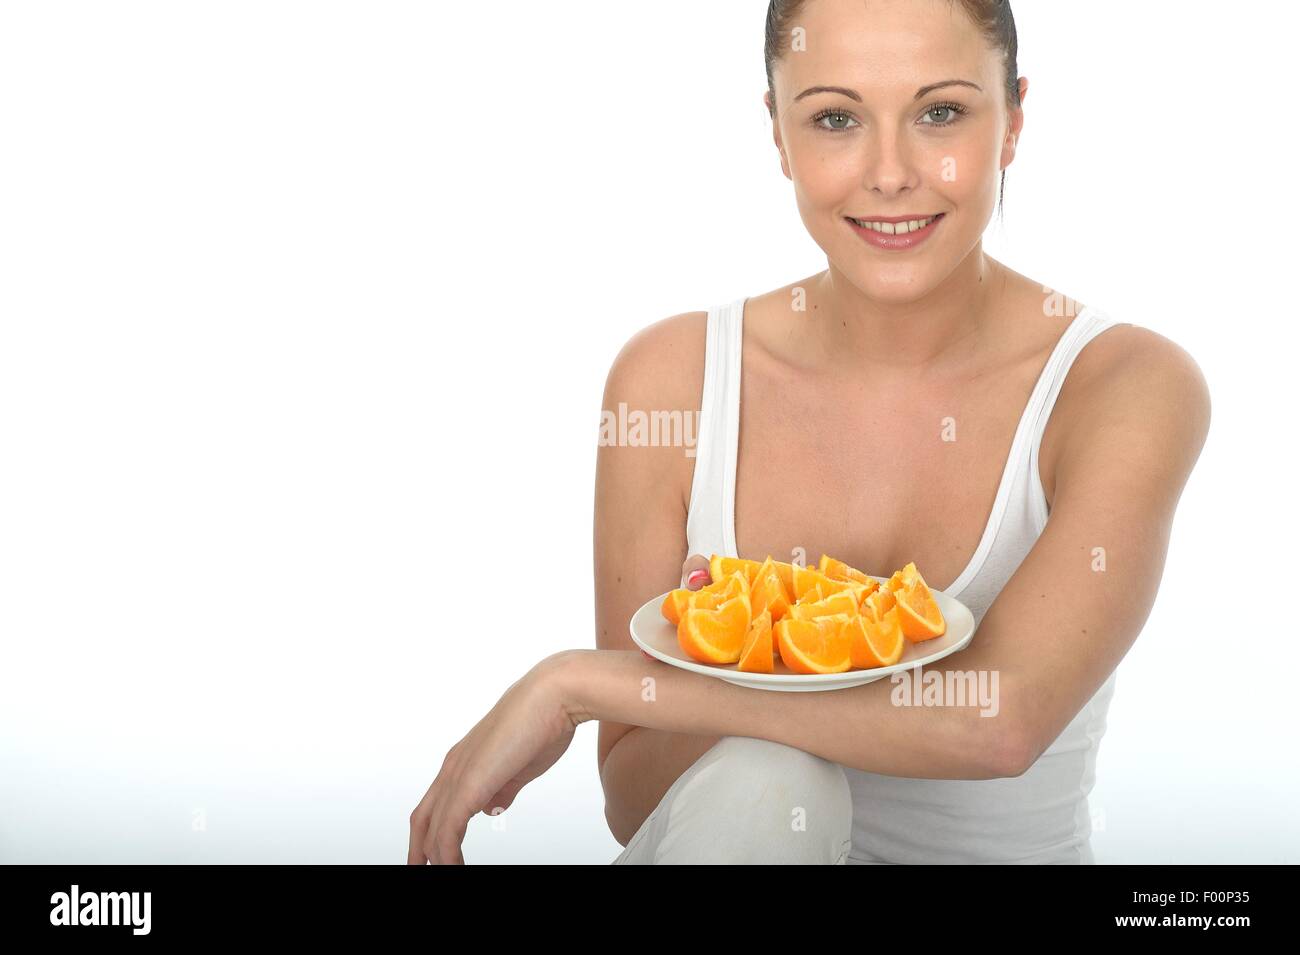 Joven positivo de comer un delicioso y saludable de frutas de naranja fresco segmentos llenos de vitamina C aisladas contra un fondo blanco, con un trazado de recorte Foto de stock